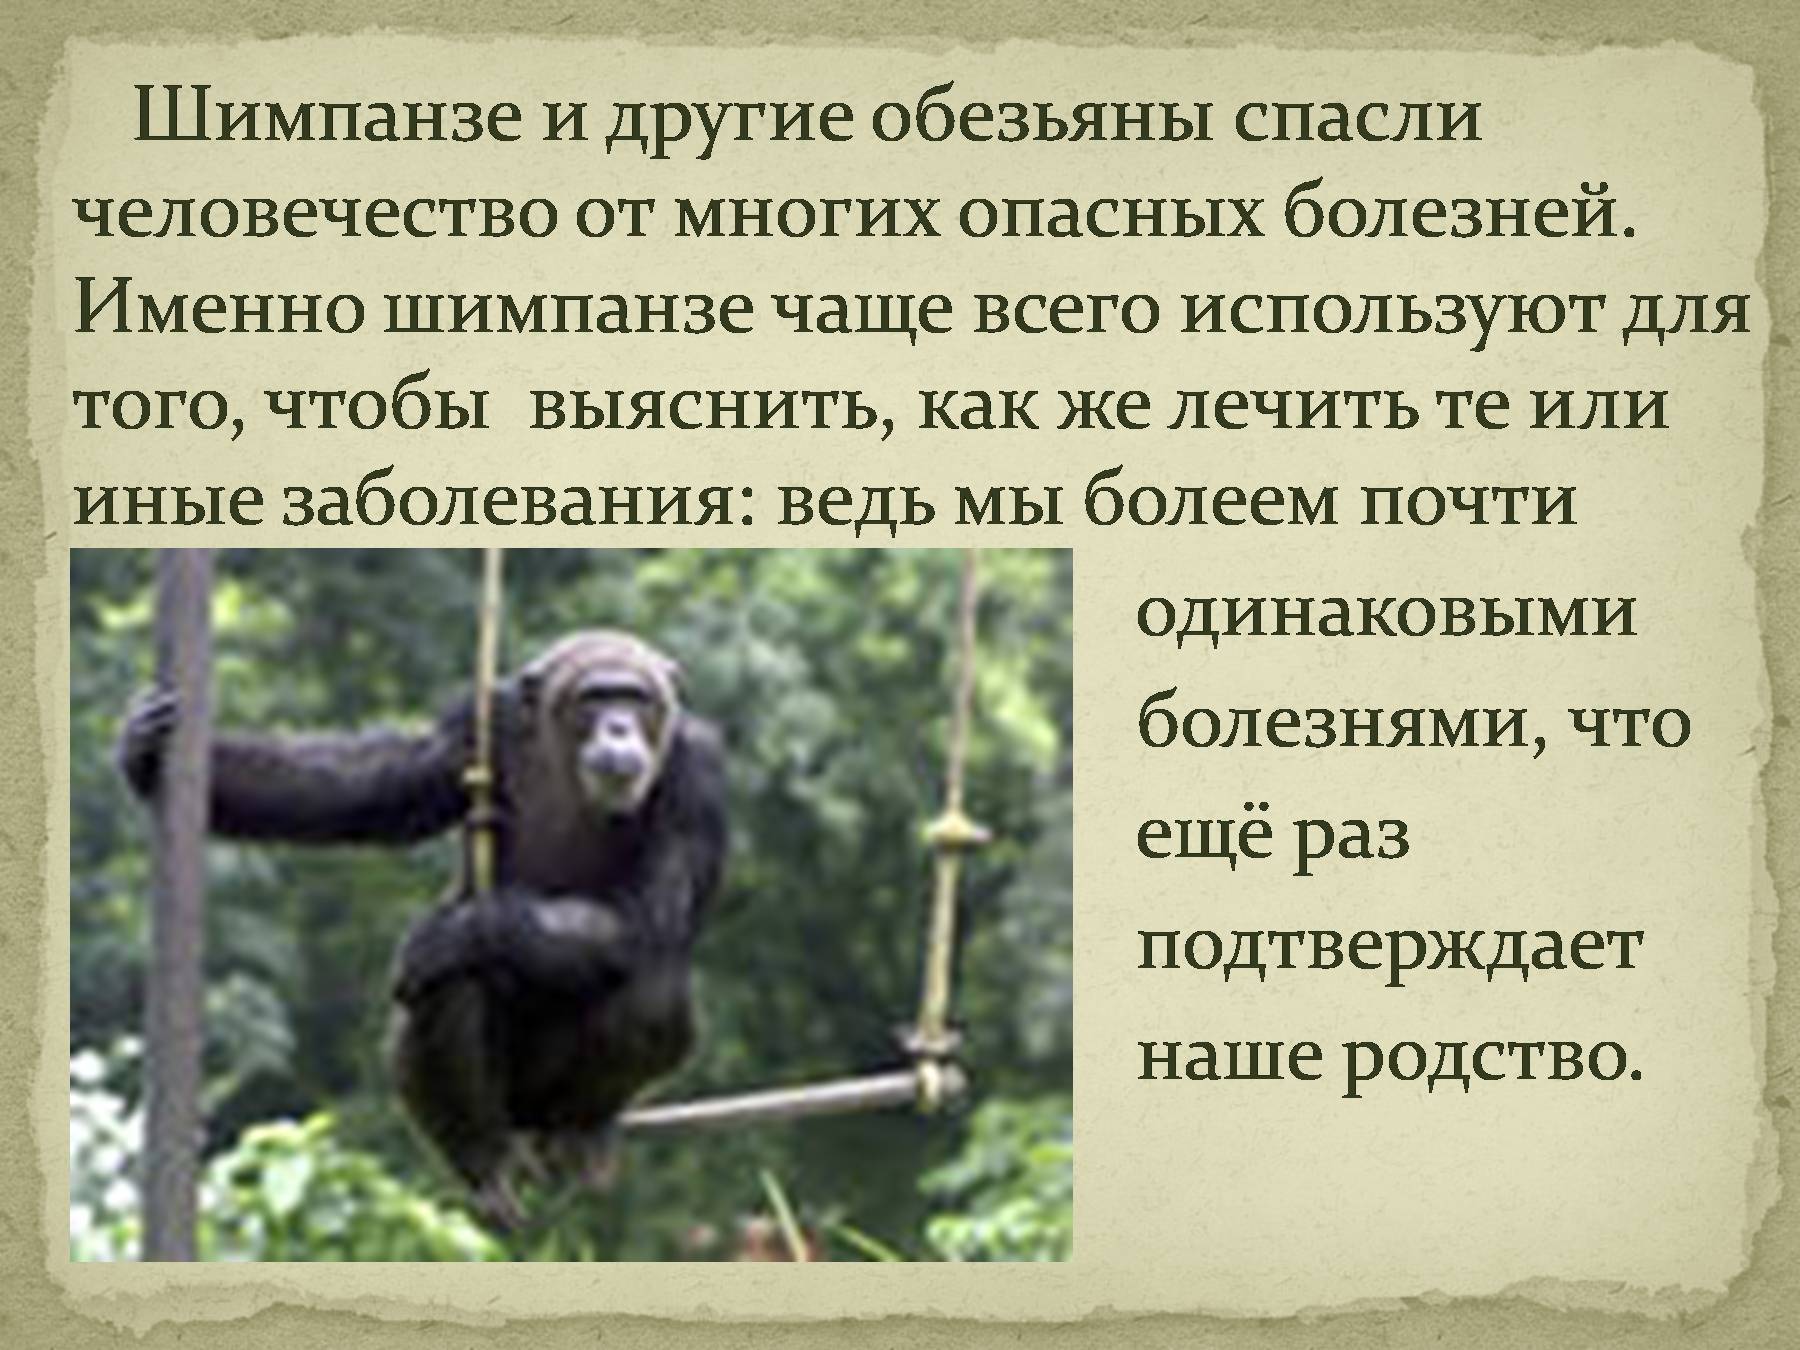 Гиббоны: места обитания, виды, фото, особенности человекообразных обезьян